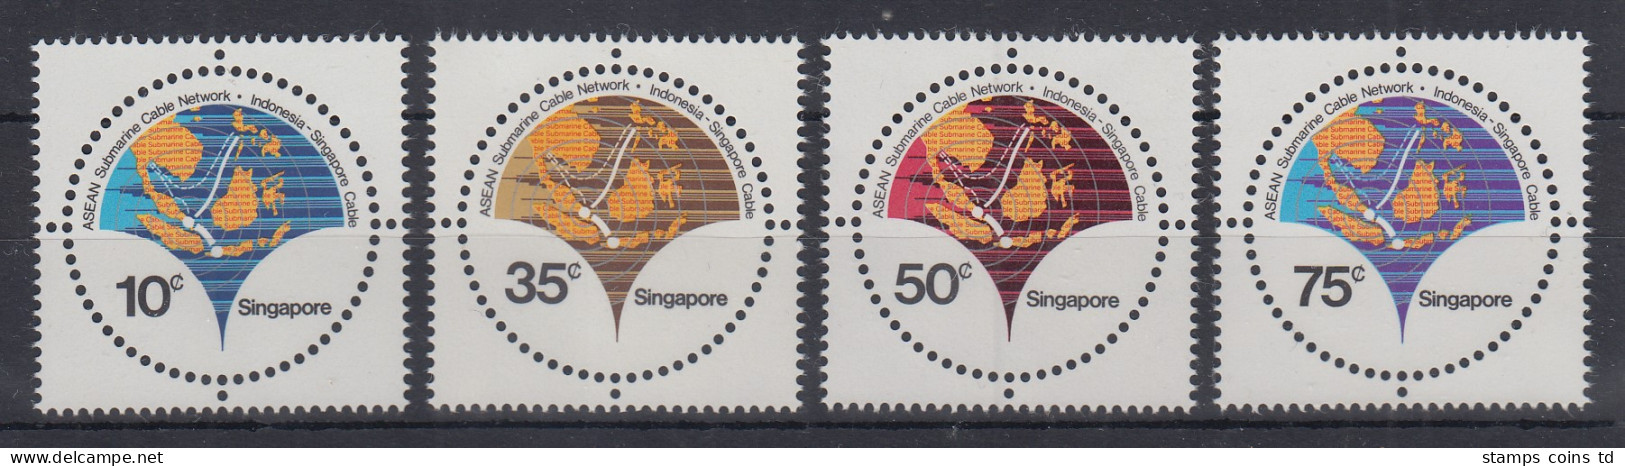 Singapur 1980 ASEAN Untersee-Kabel  Mi.-Nr. 362-65 Postfrisch **  - Singapore (1959-...)